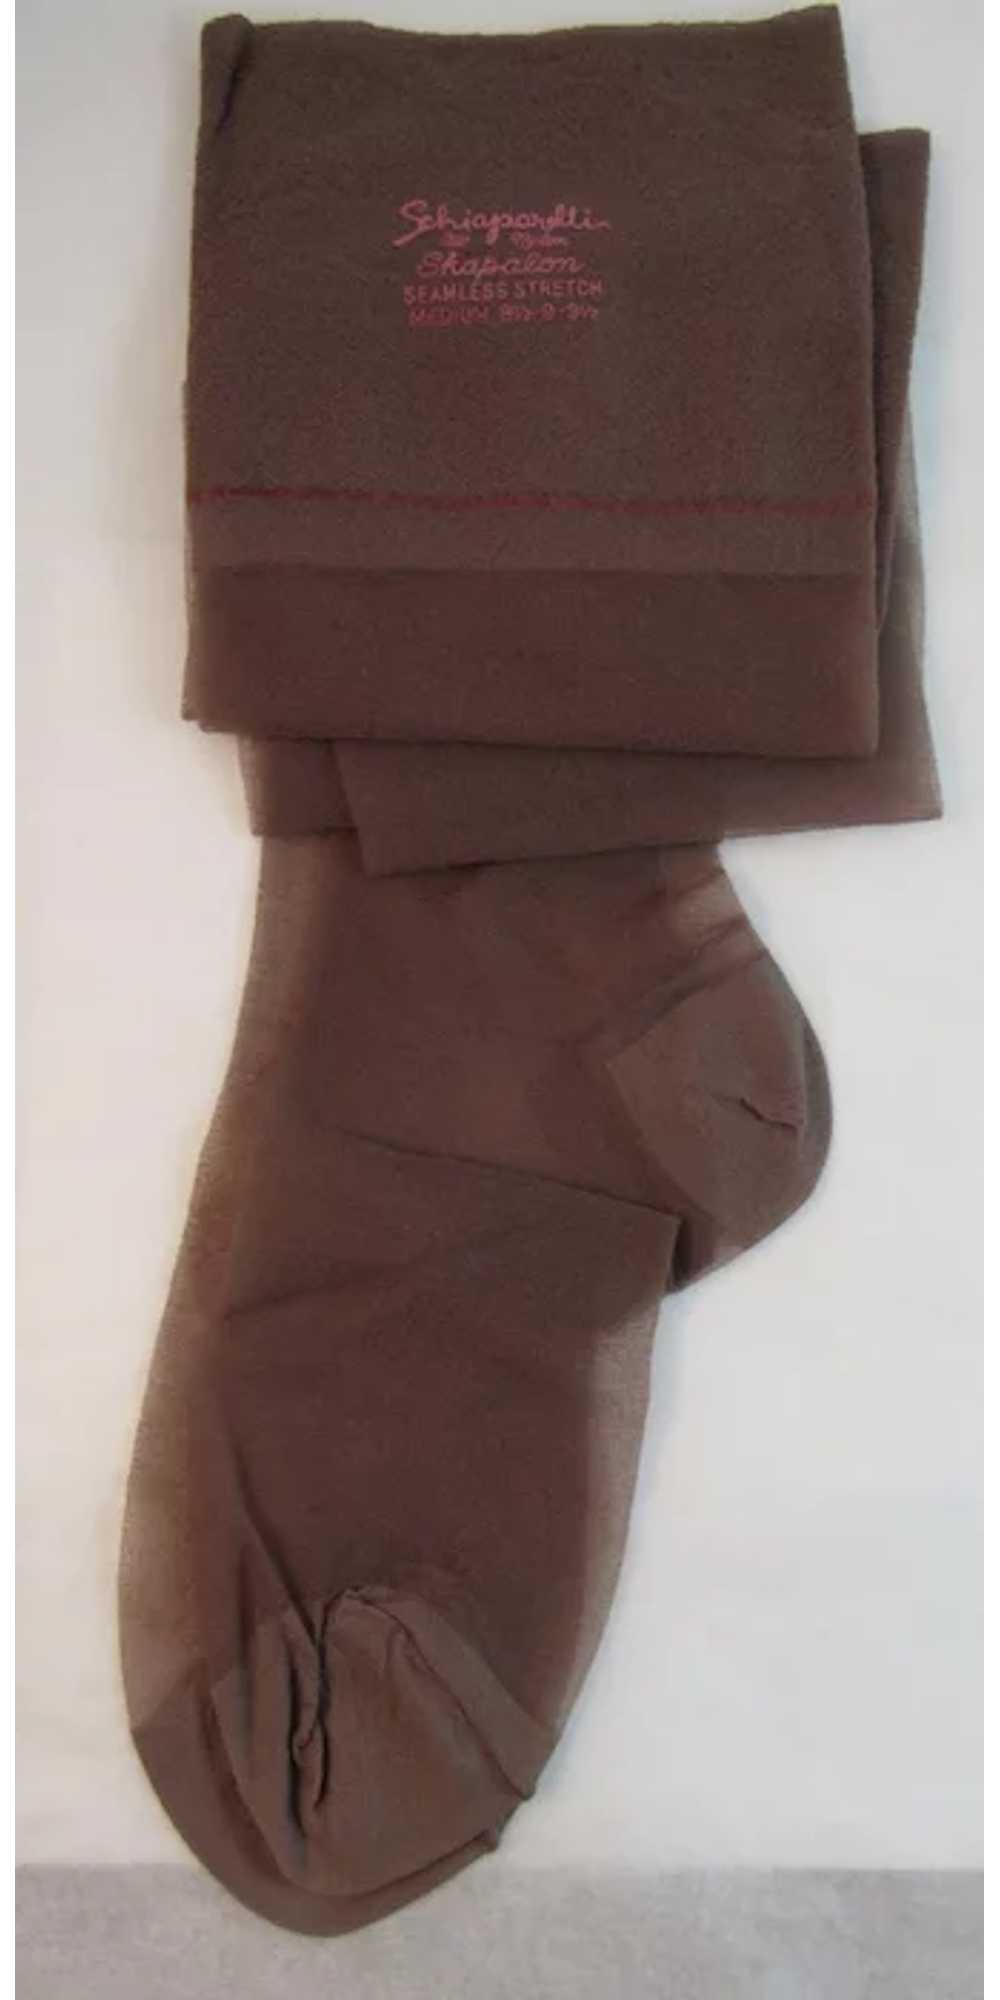 Schiaparelli Skapalon Seamless Stretch Stockings … - image 3